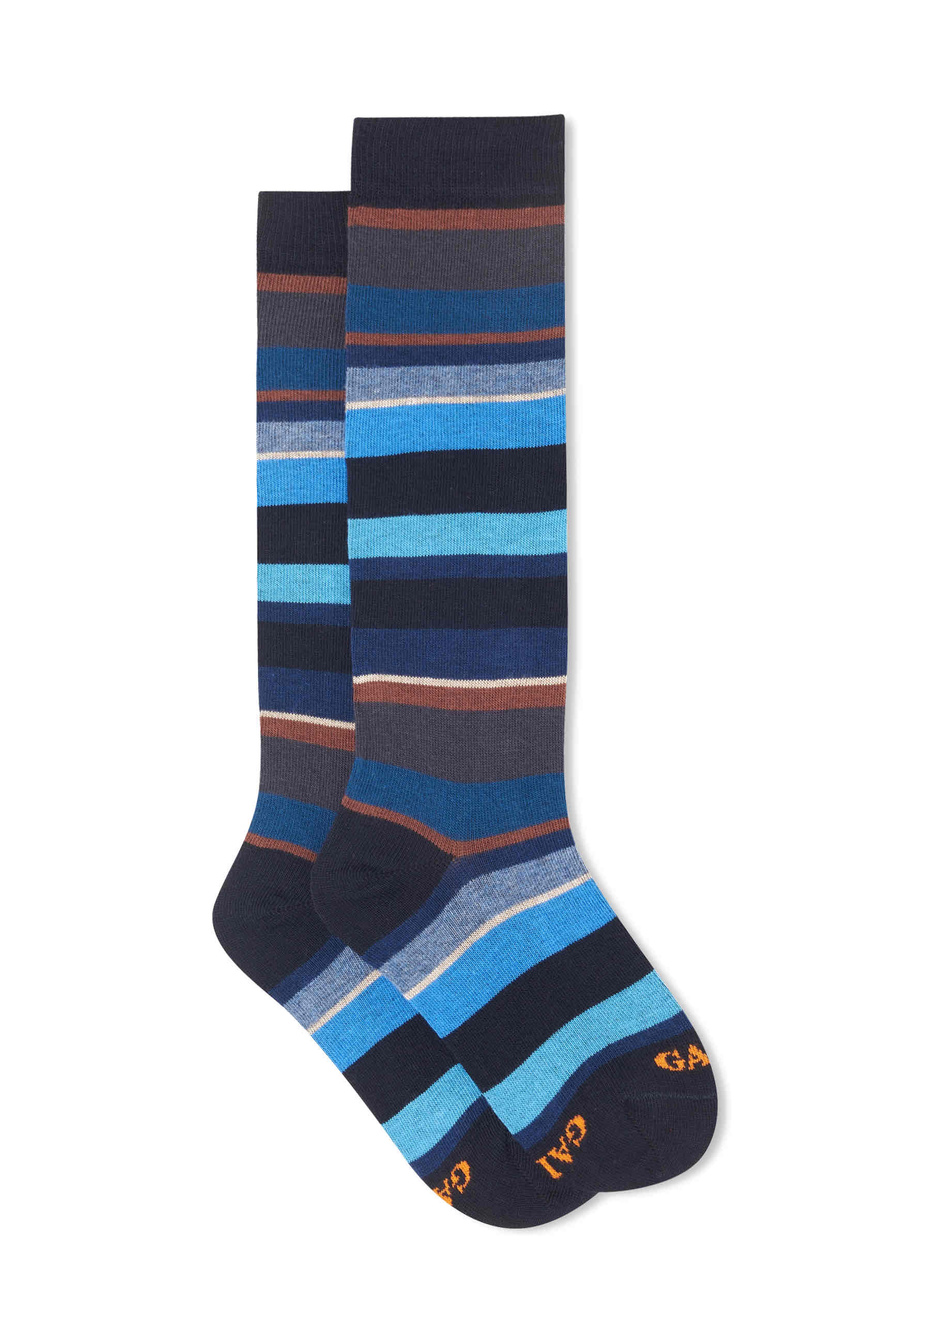 Calze lunghe bambino cotone blu/sabbia righe multicolor - Gallo 1927 - Official Online Shop